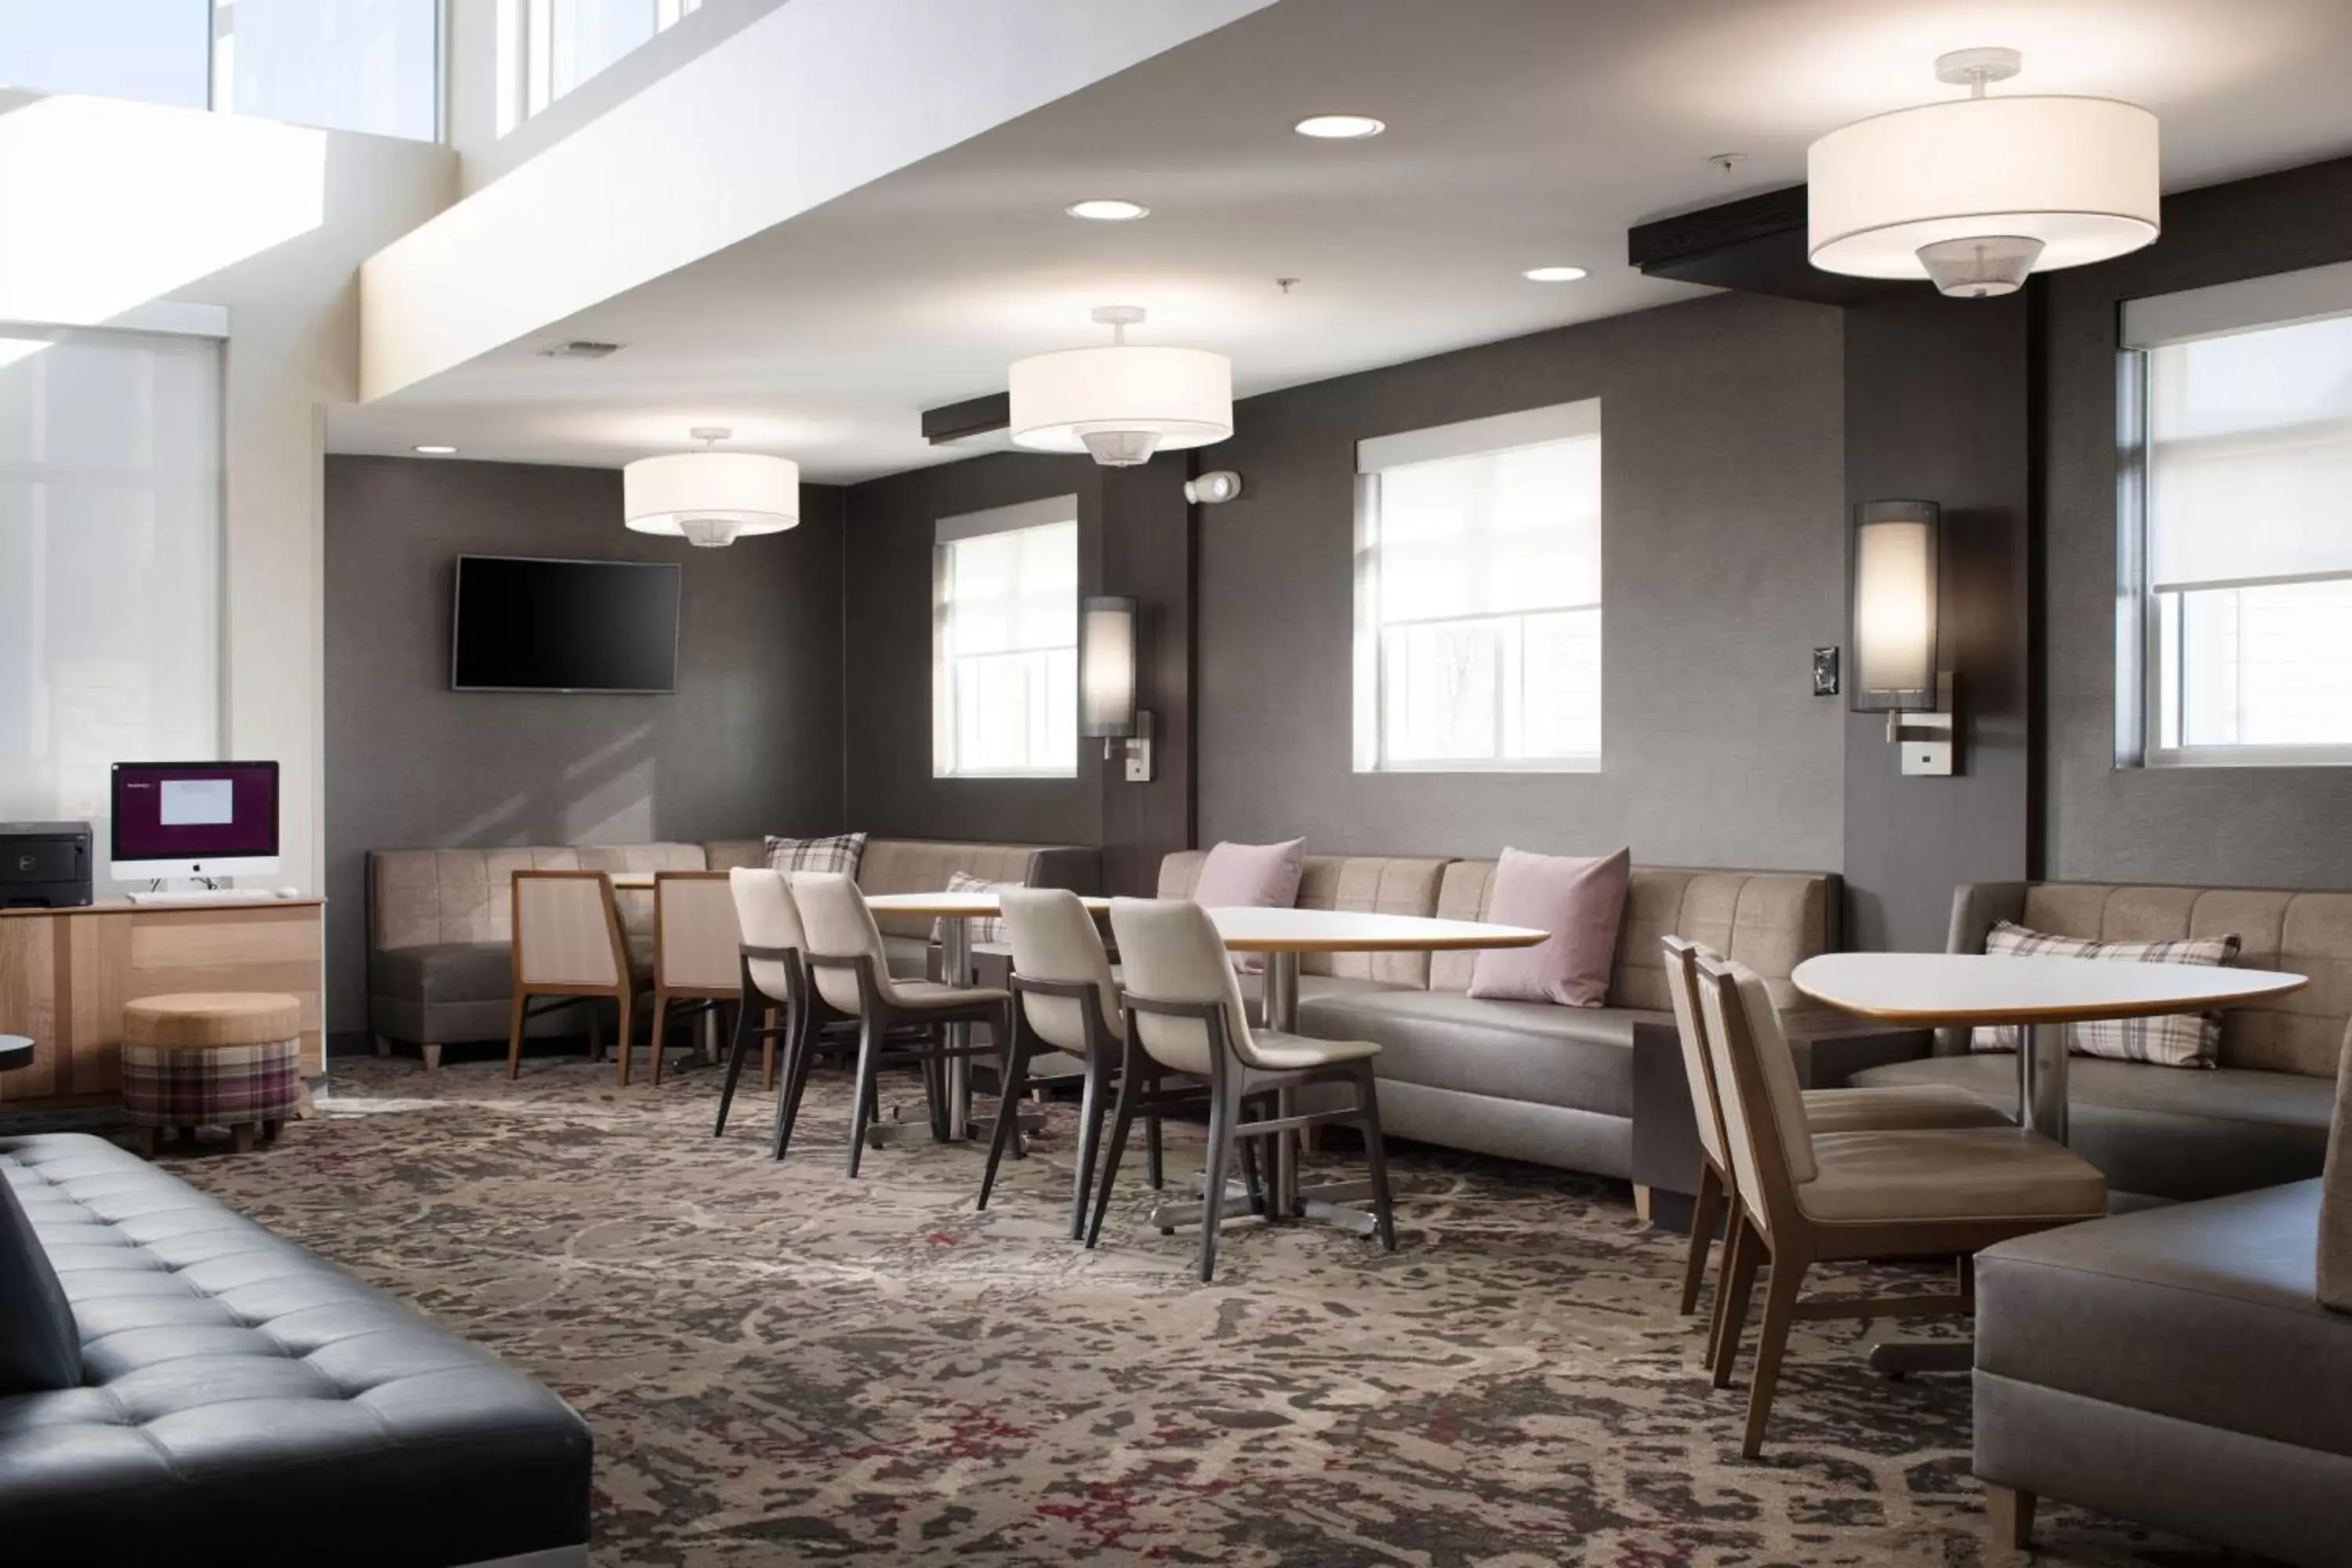 Lobby or reception in Residence Inn by Marriott Texarkana